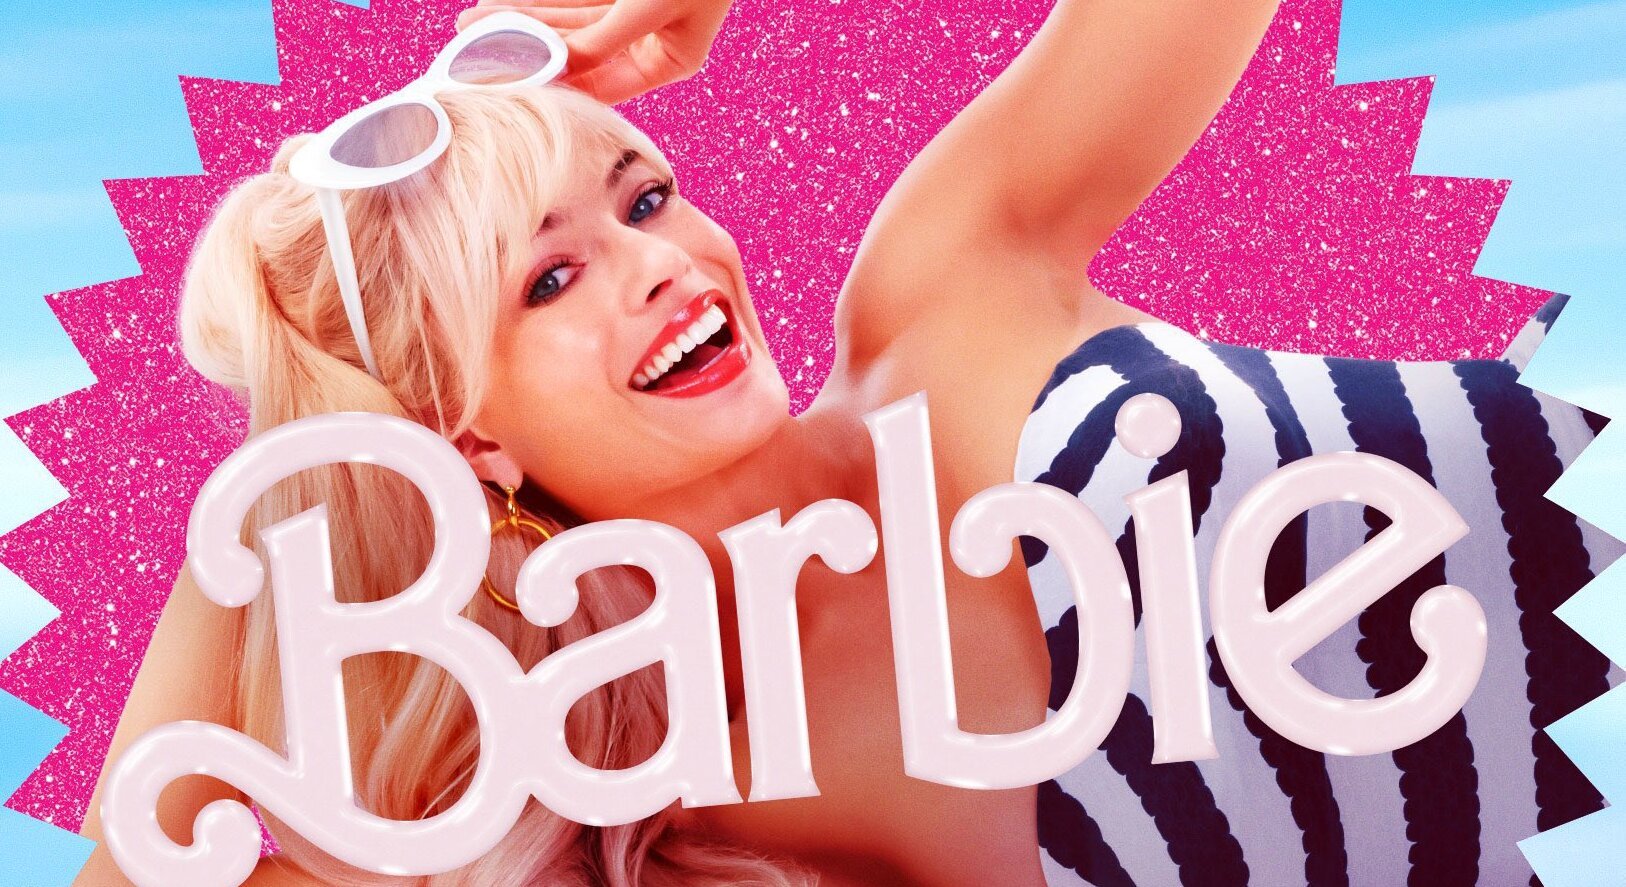 Barbie filme 2023 fundo transparente png em 2023